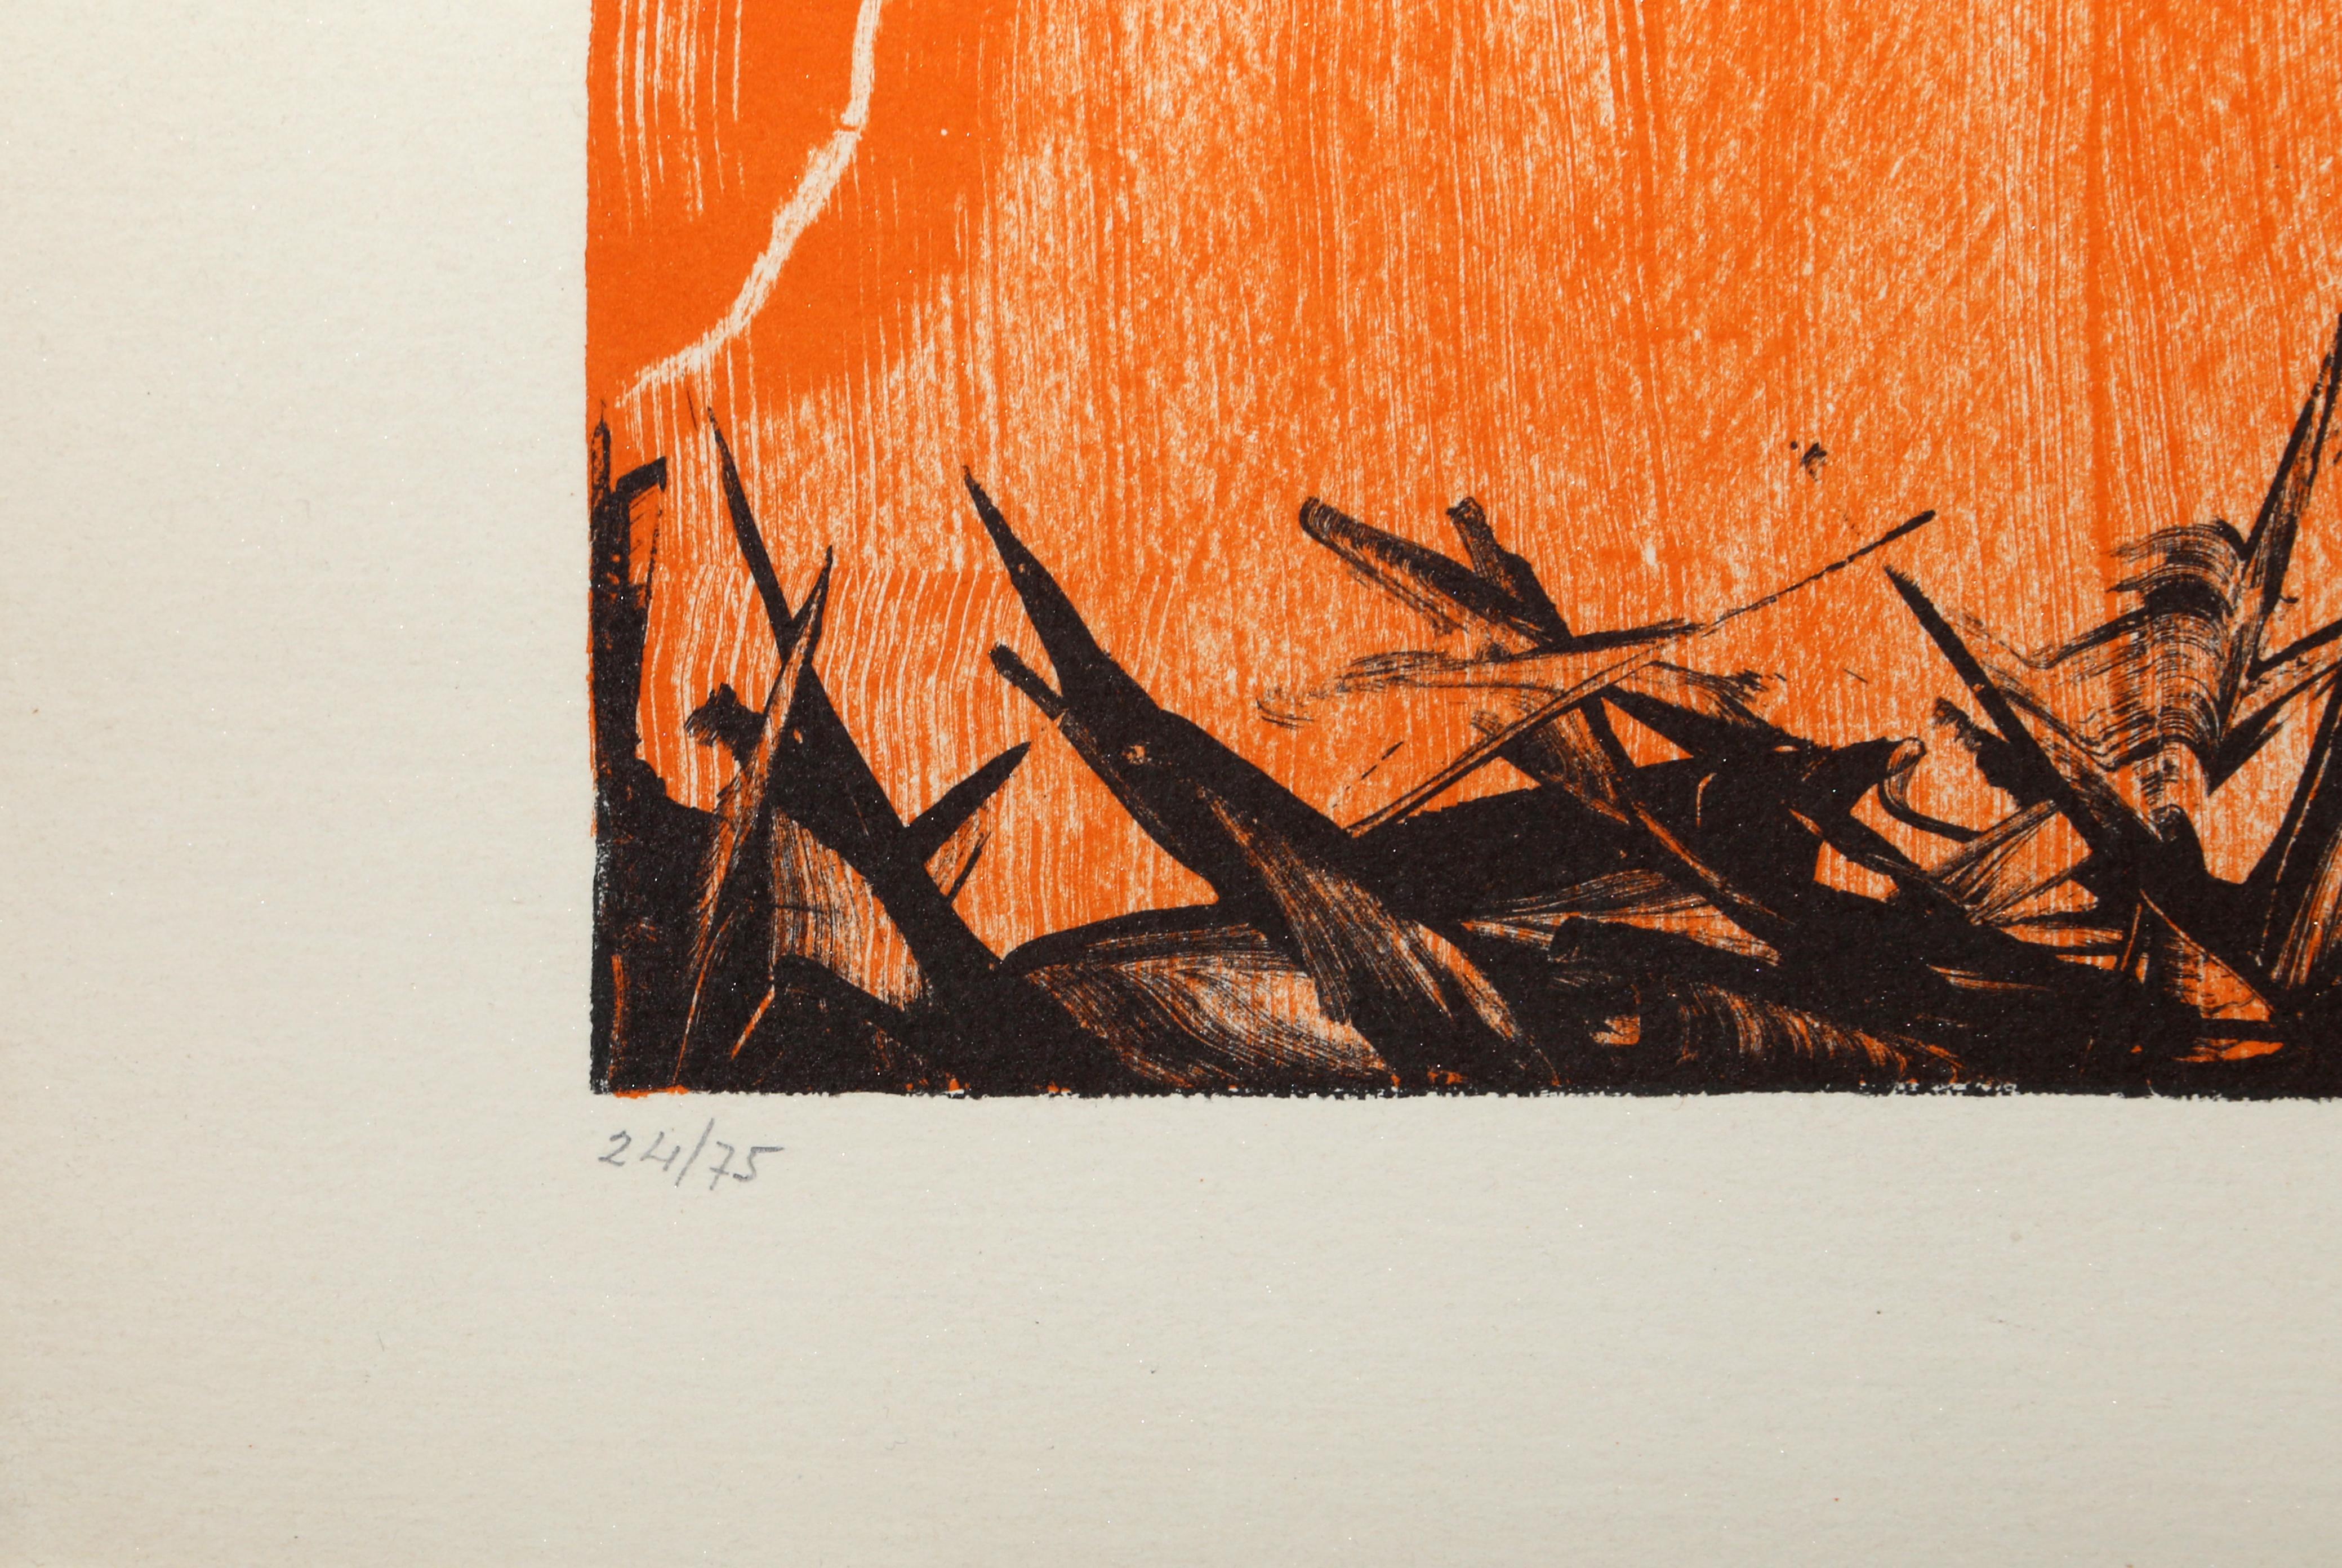 Paysage d'Orange
Jimmy Ernst, Américain (1920-1984)
Date : circa 1970
Lithographie, signée et numérotée au crayon
Edition de 24/75
Taille de l'image : 17.75 x 24 pouces
Taille : 22 x 28 in. (55.88 x 71.12 cm)